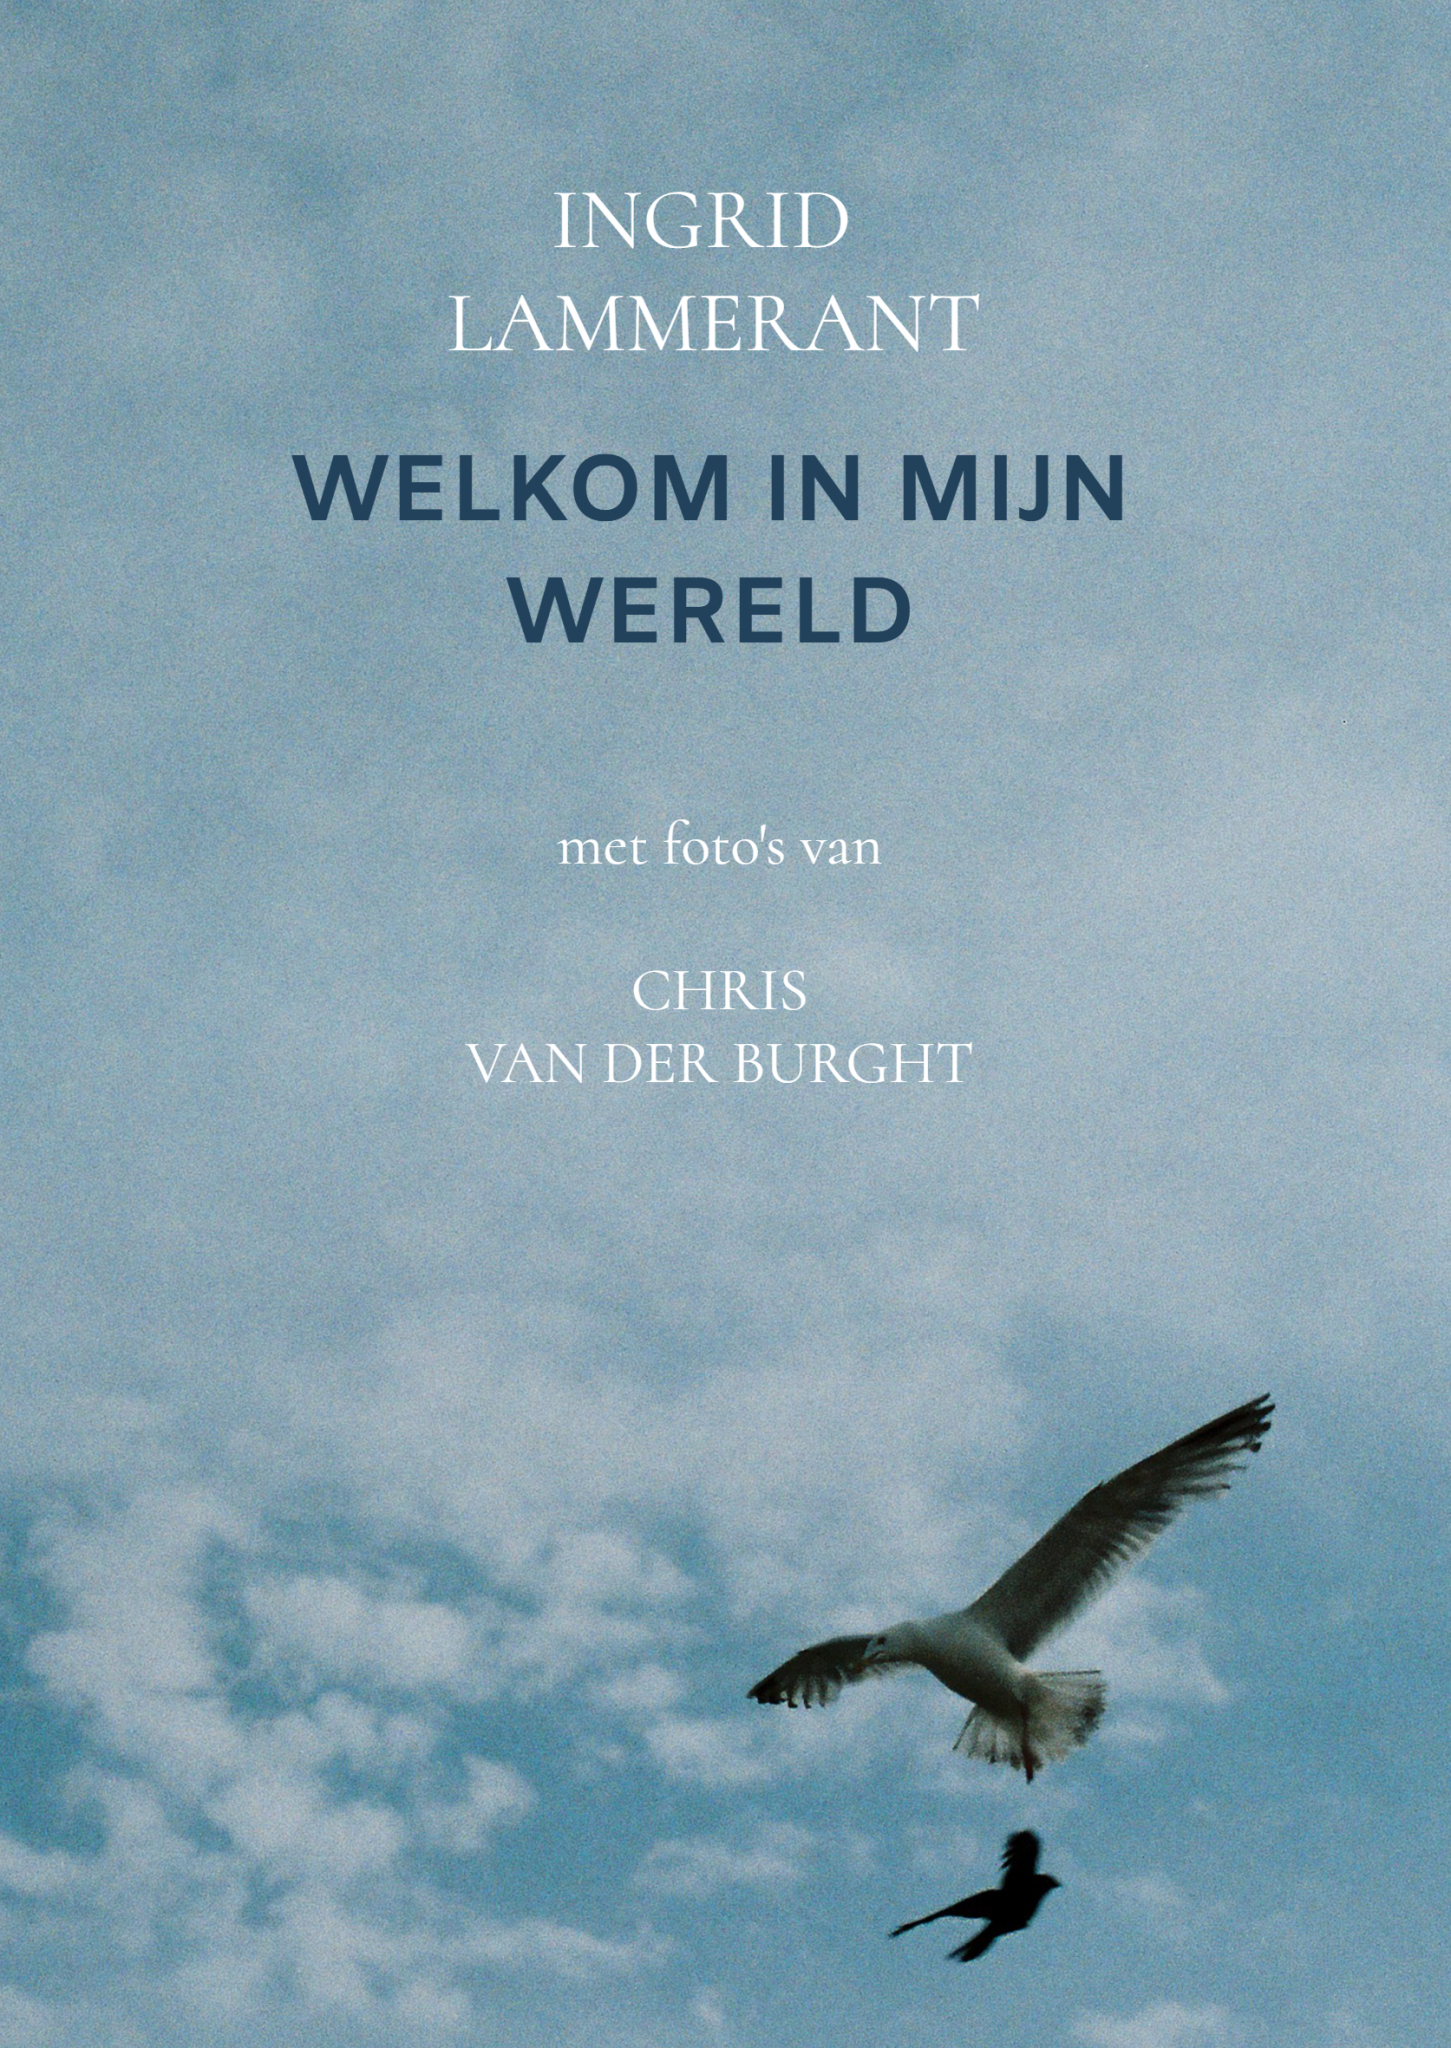 Boek - Welkom in mijn wereld - Ingrid Lammerant Chris van der Burght